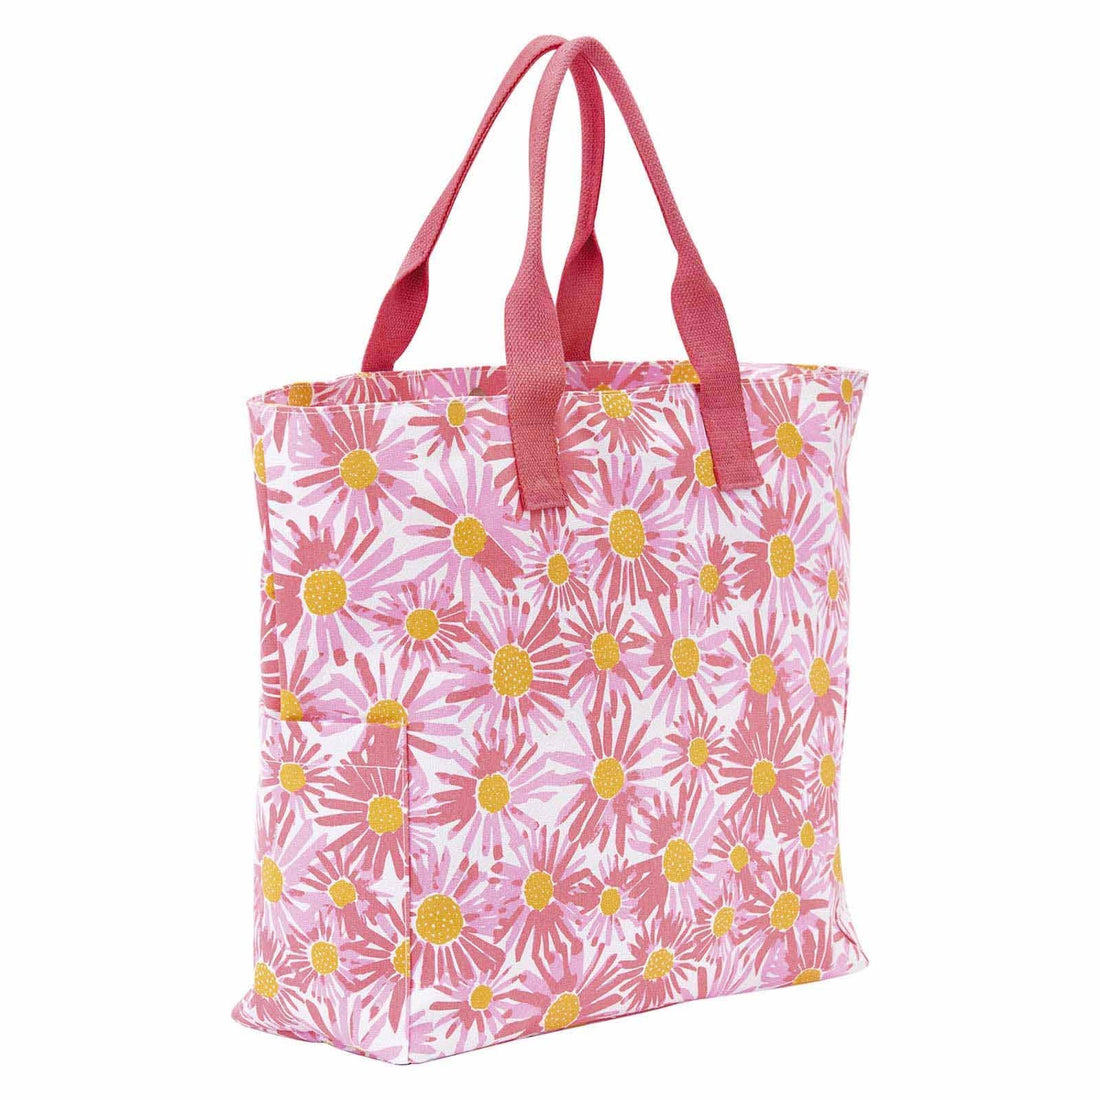 Daisies Little Shopper Tote Bag